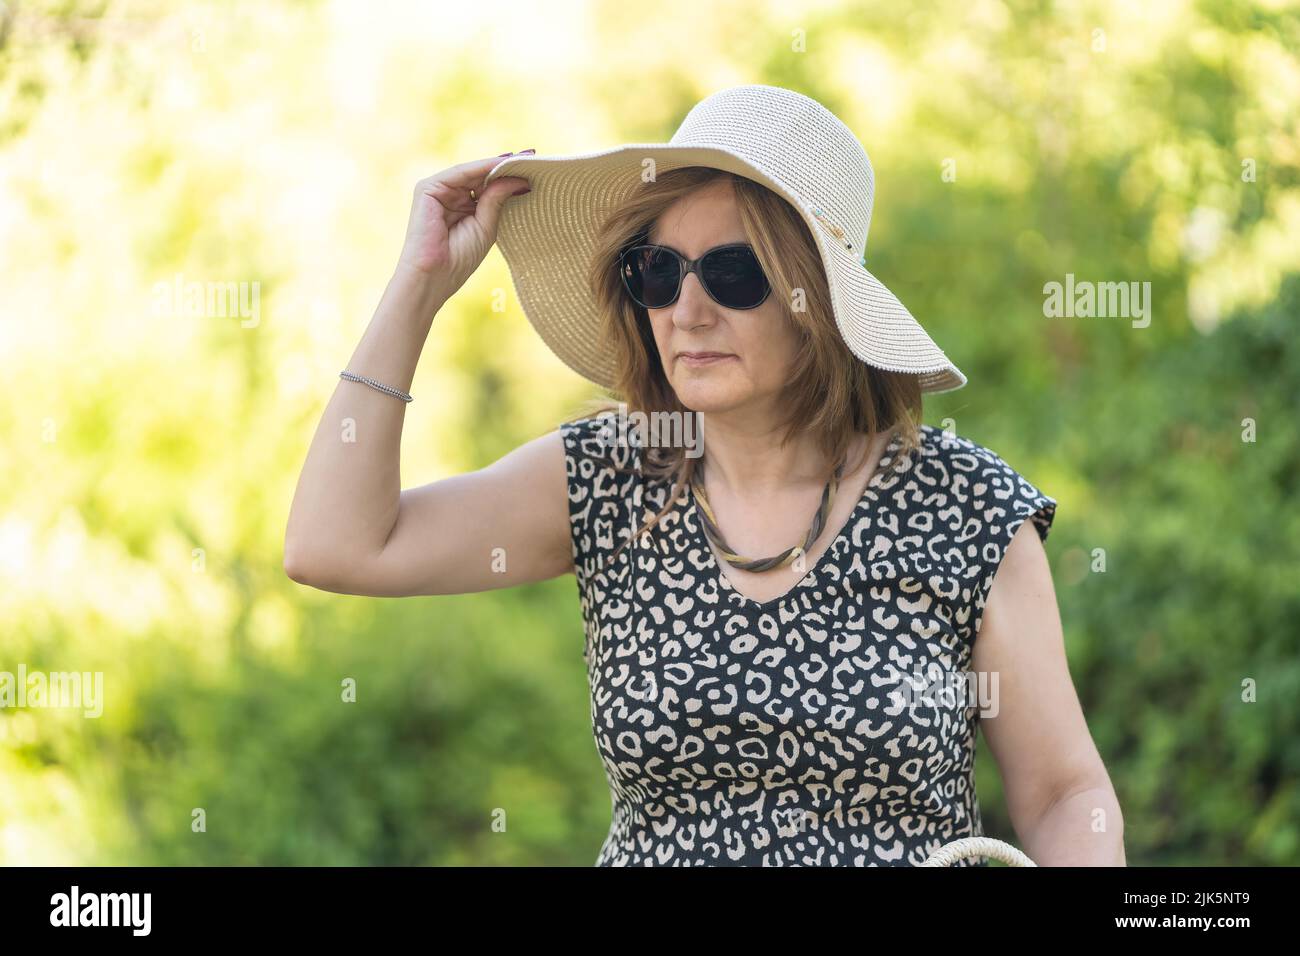 Reife Frau in einem öffentlichen Park, die an einem heißen Sommertag einen Strohhut trägt. Stockfoto